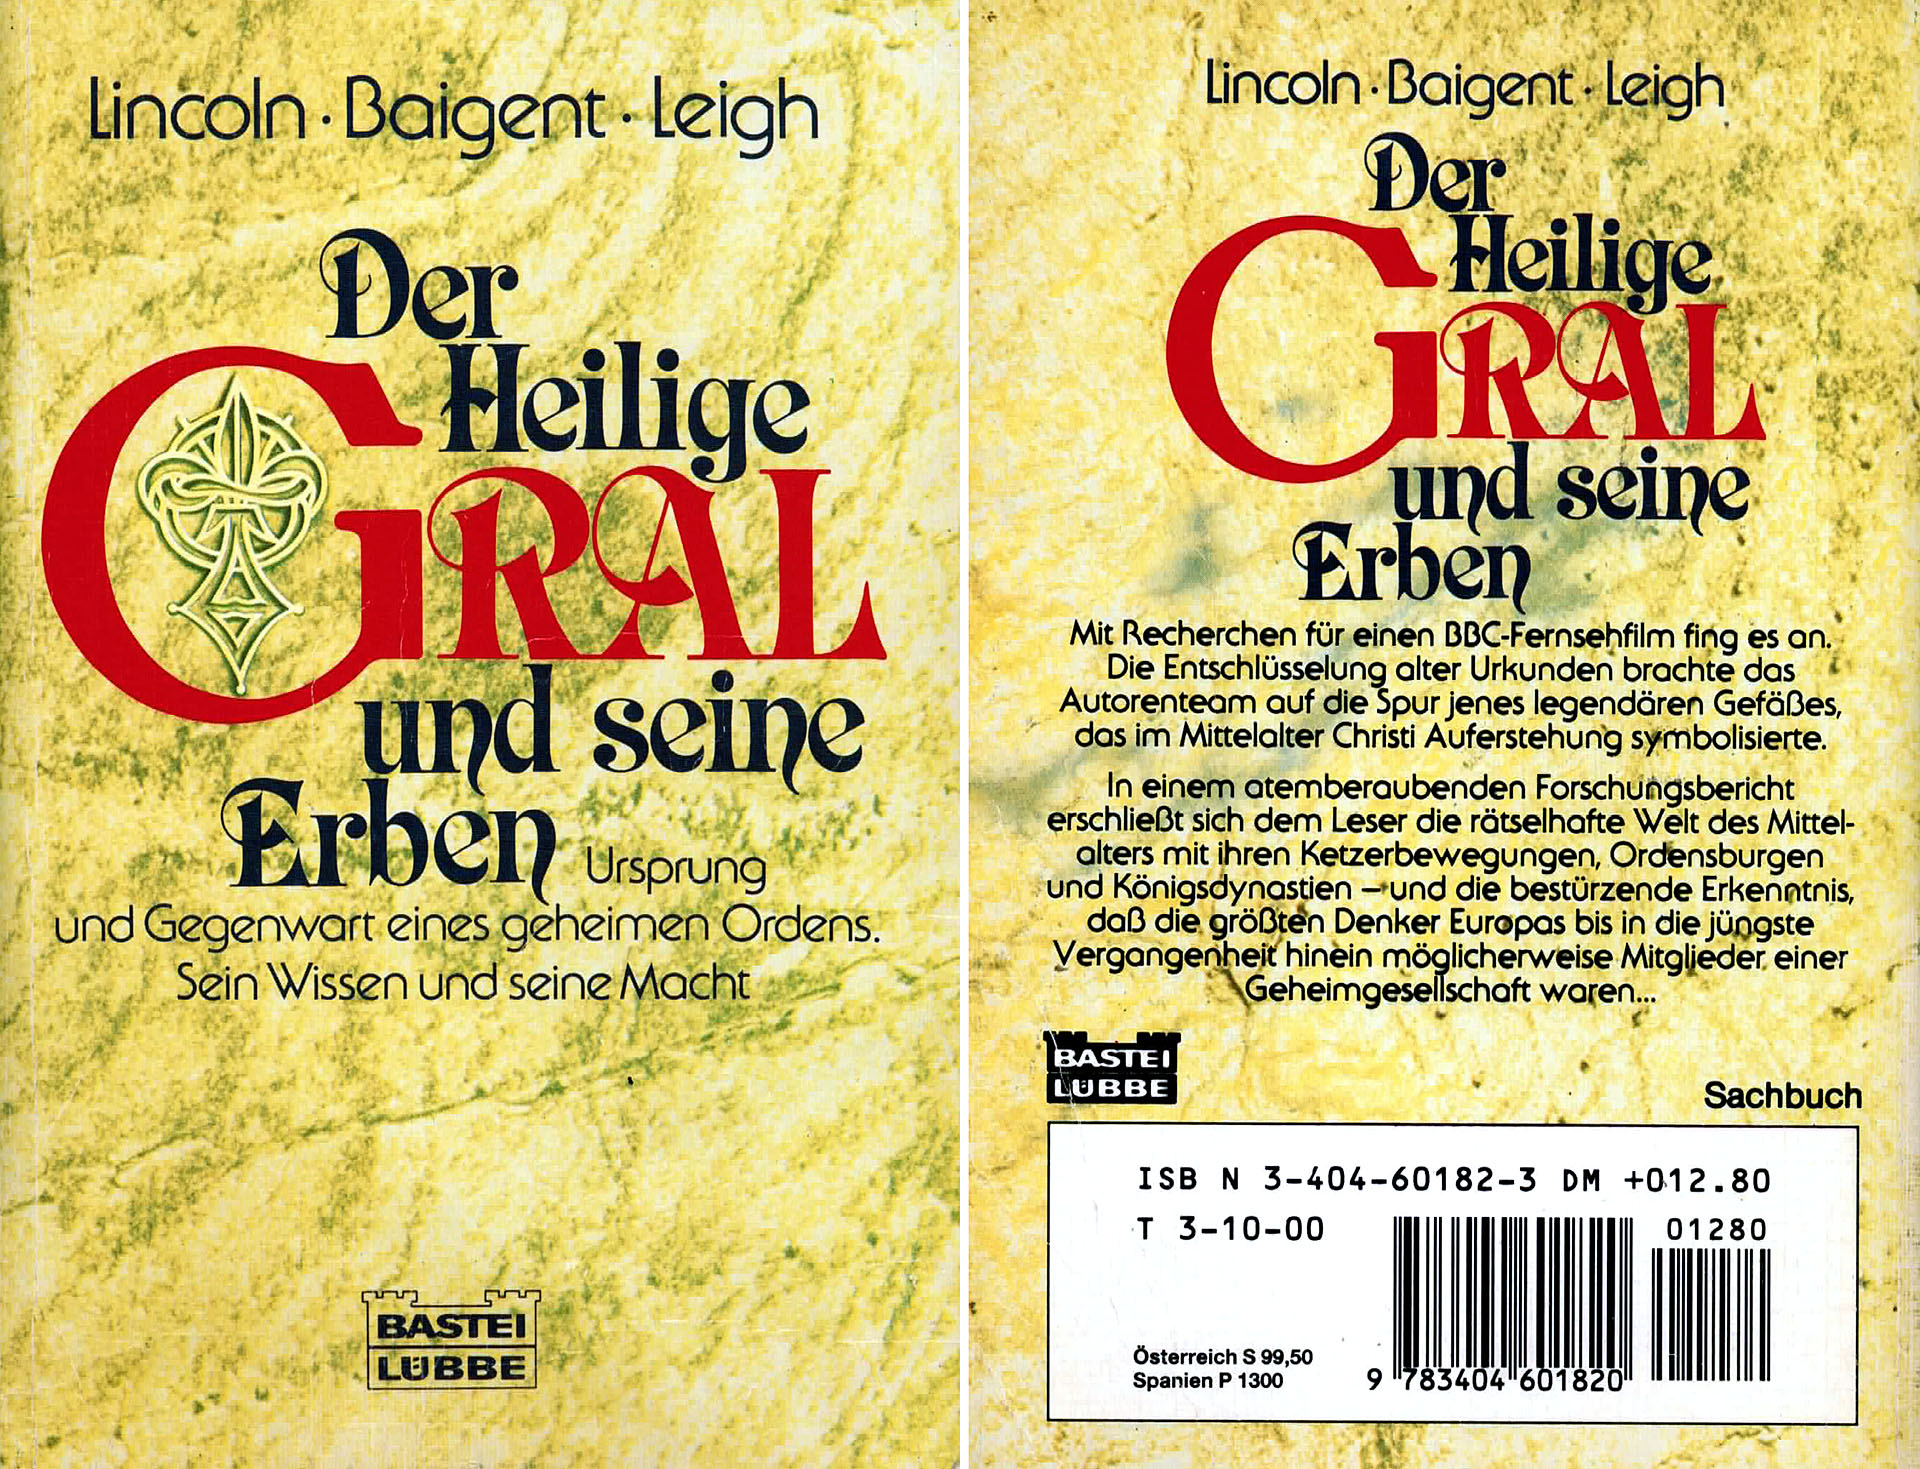 Der heilige Gral und seine Erben - Lincoln - Baigent - Leight